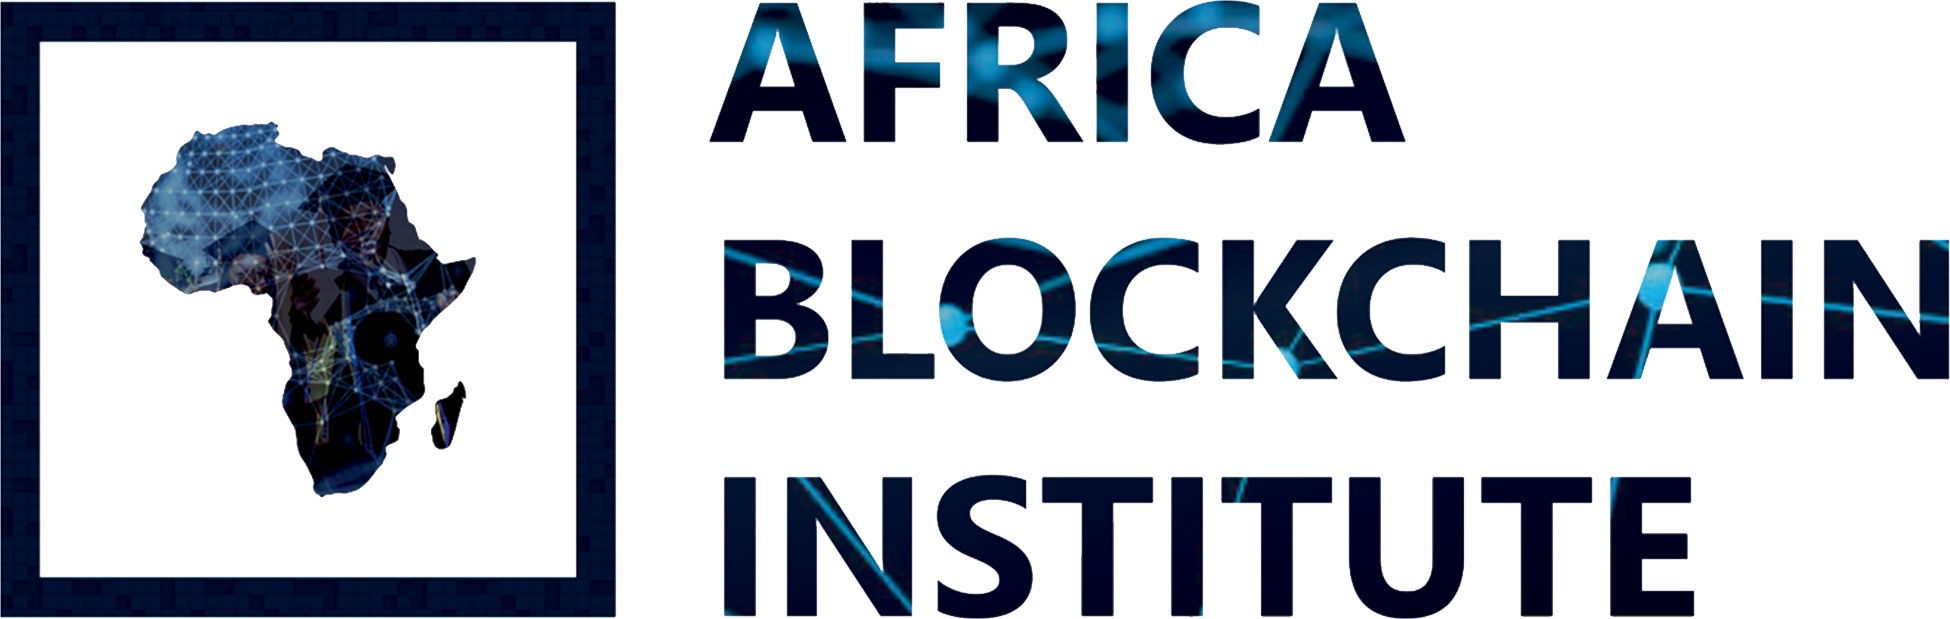 Africa Blockchain Institute